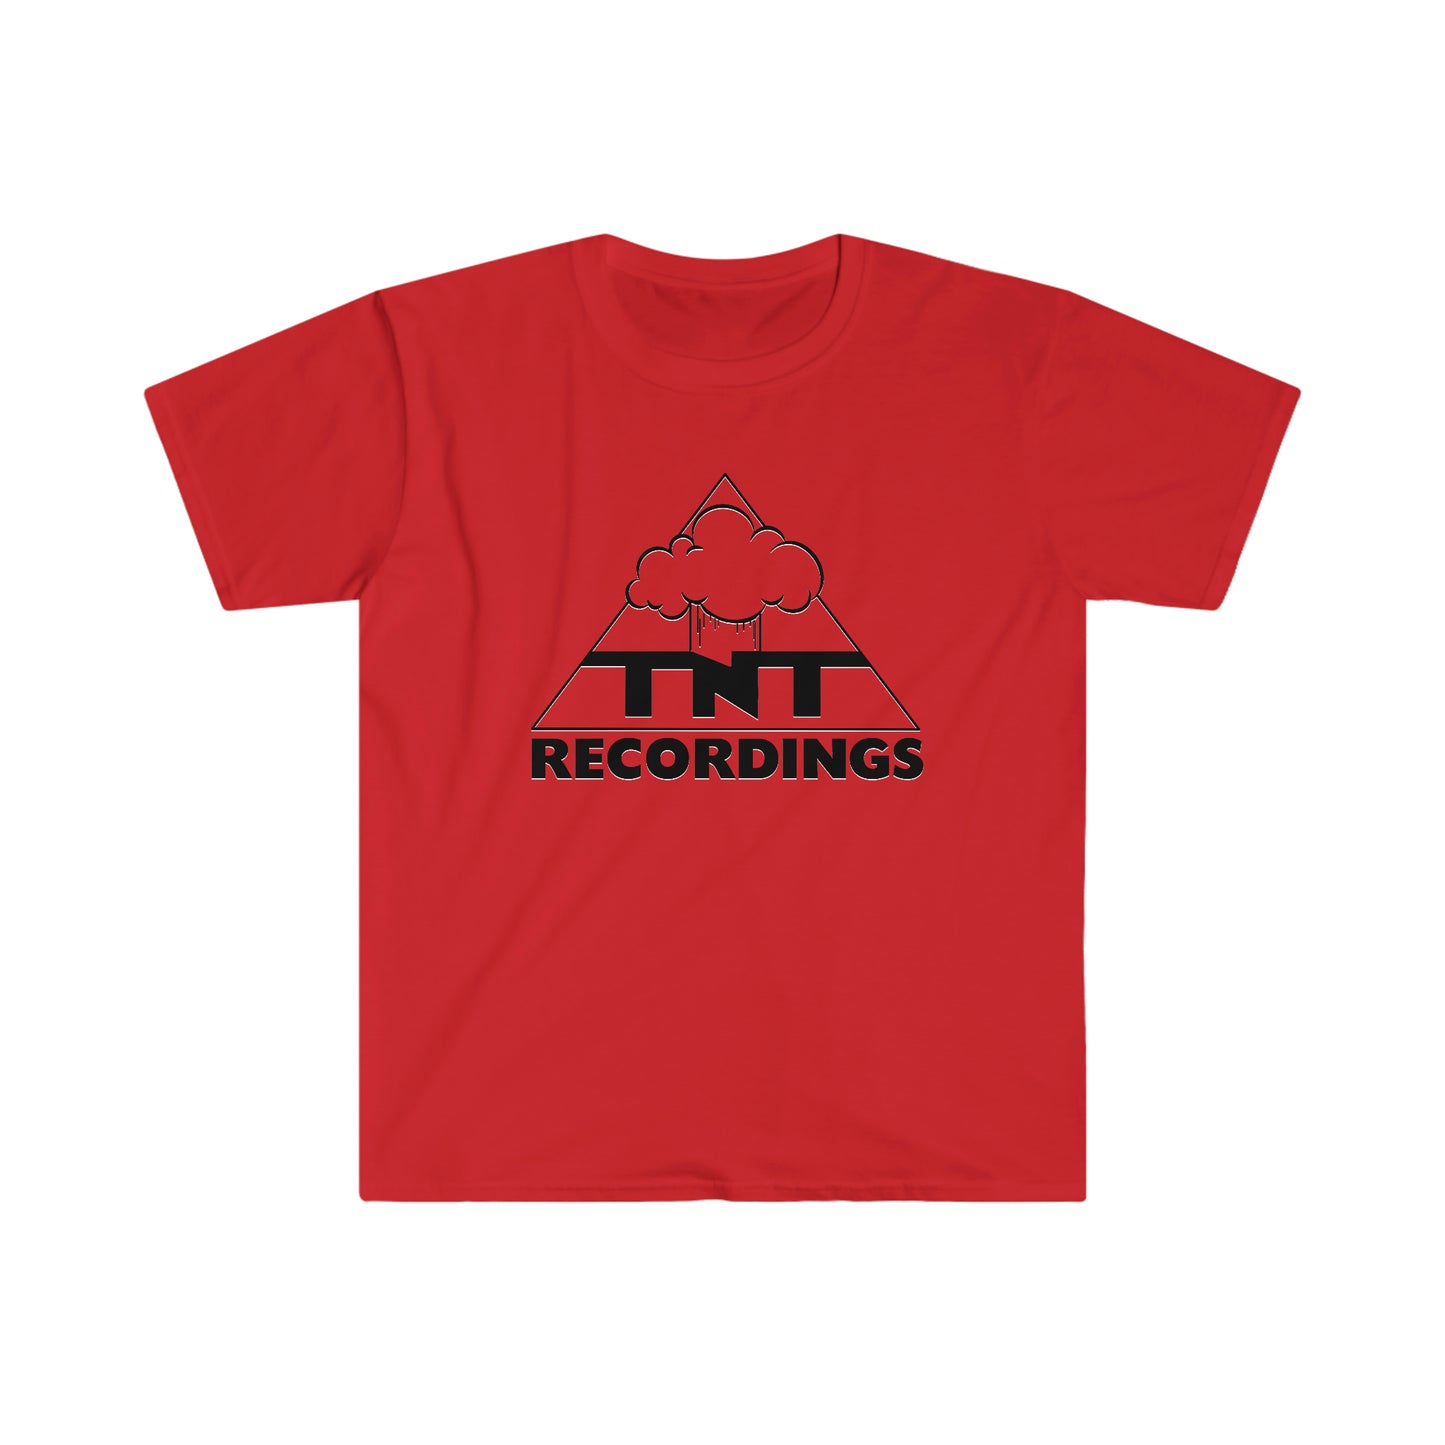 TNT Men's Softstyle T-Shirt (Unisex)